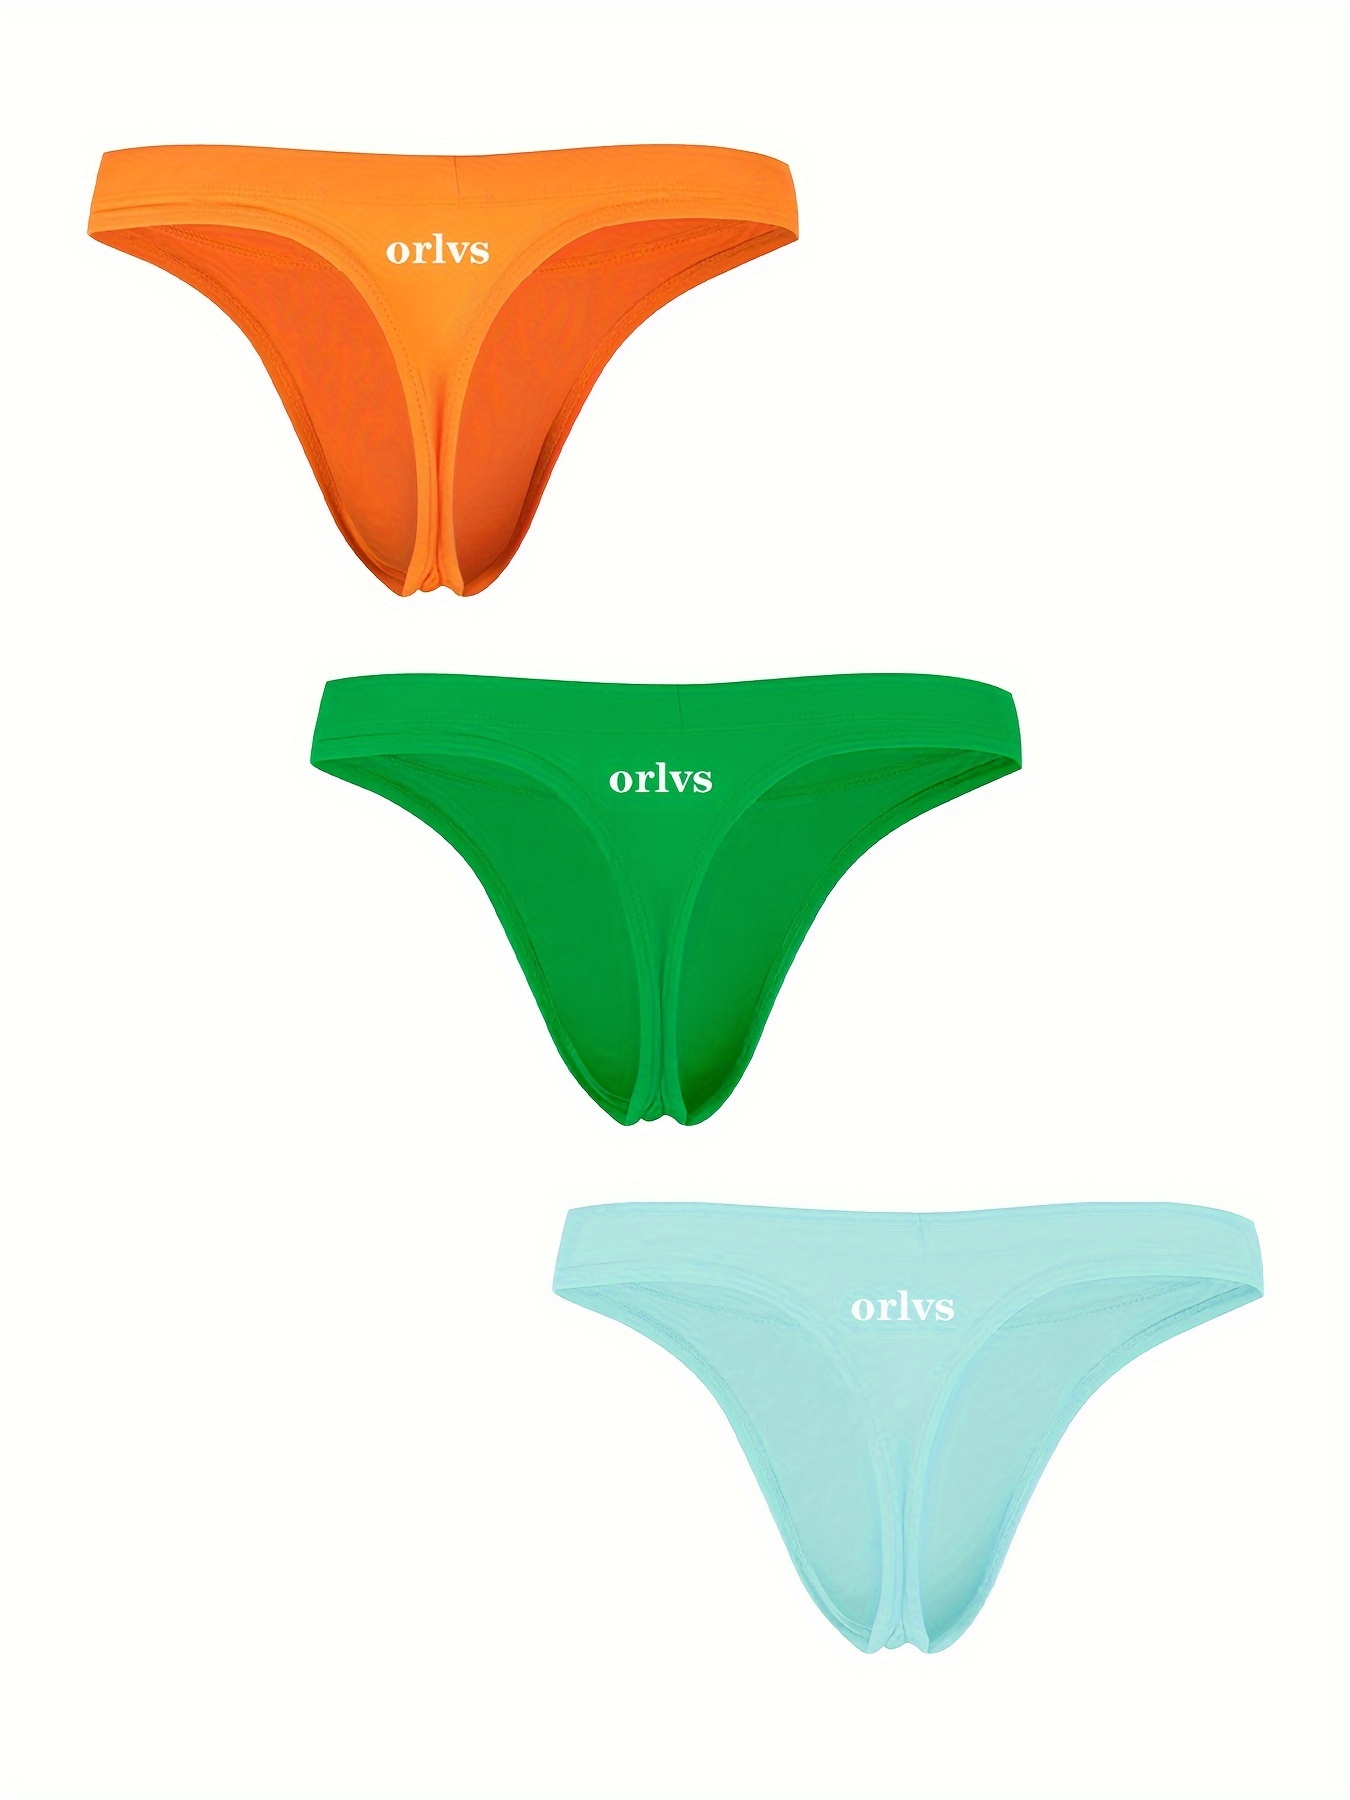 Men's Low Waist Thongs G strings Butt Reveal Underwear - Temu